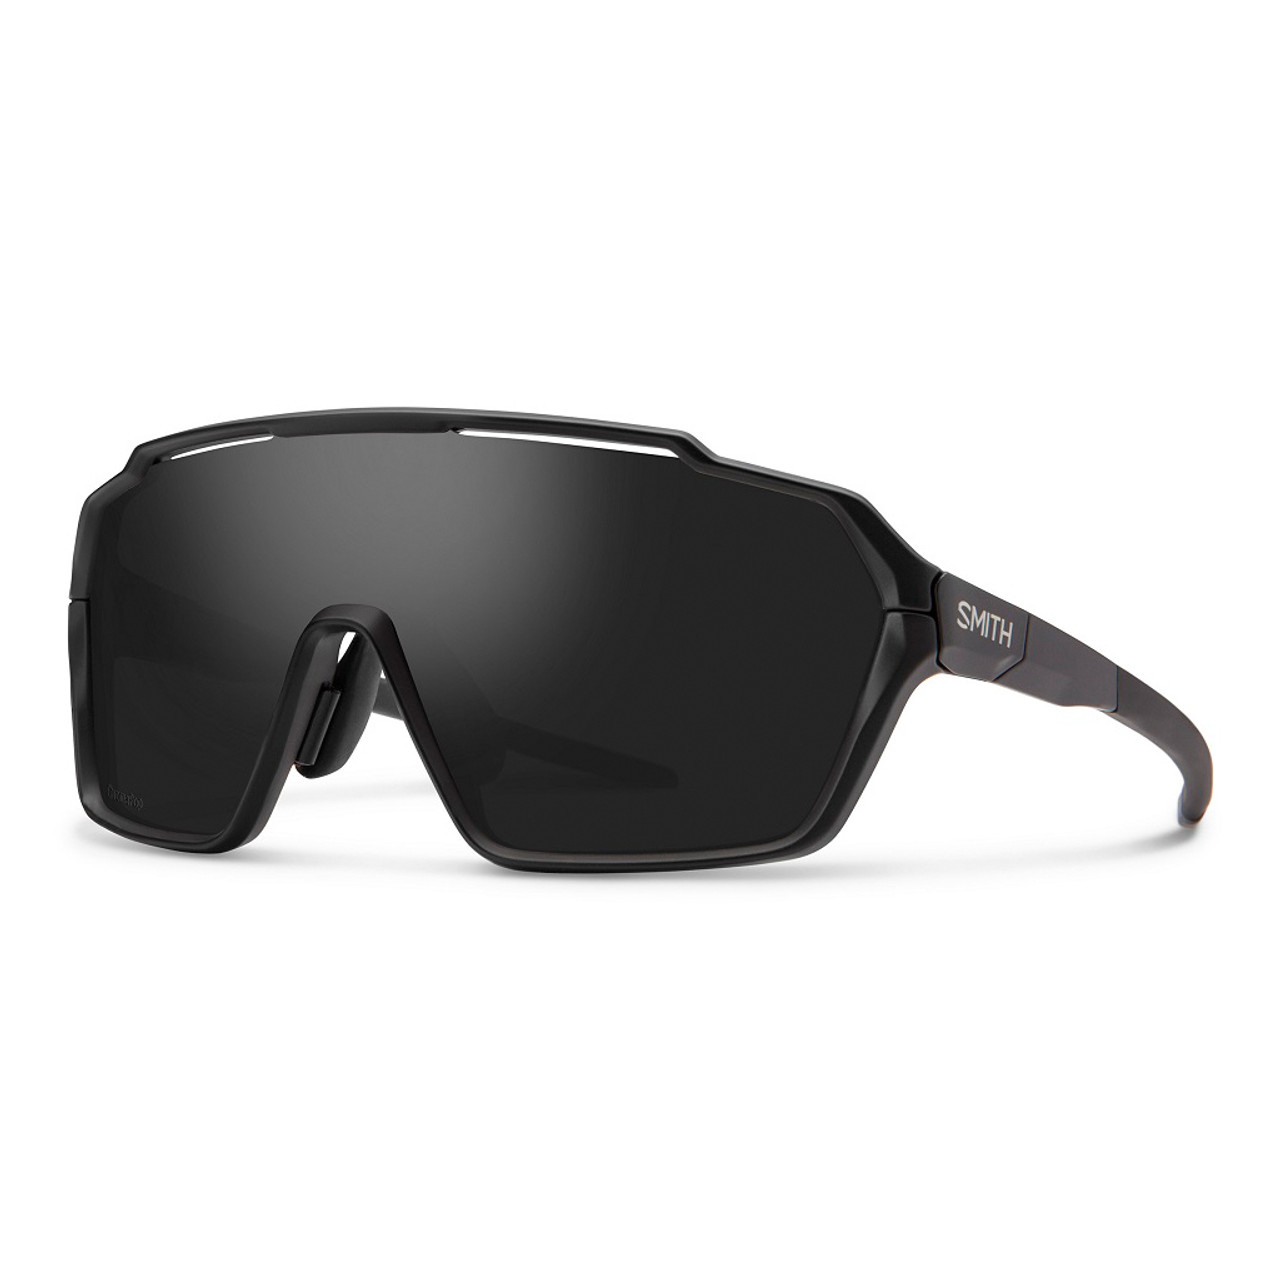 Matte Black w/ Chromapop Black - Smith Shift MAG Sunglasses